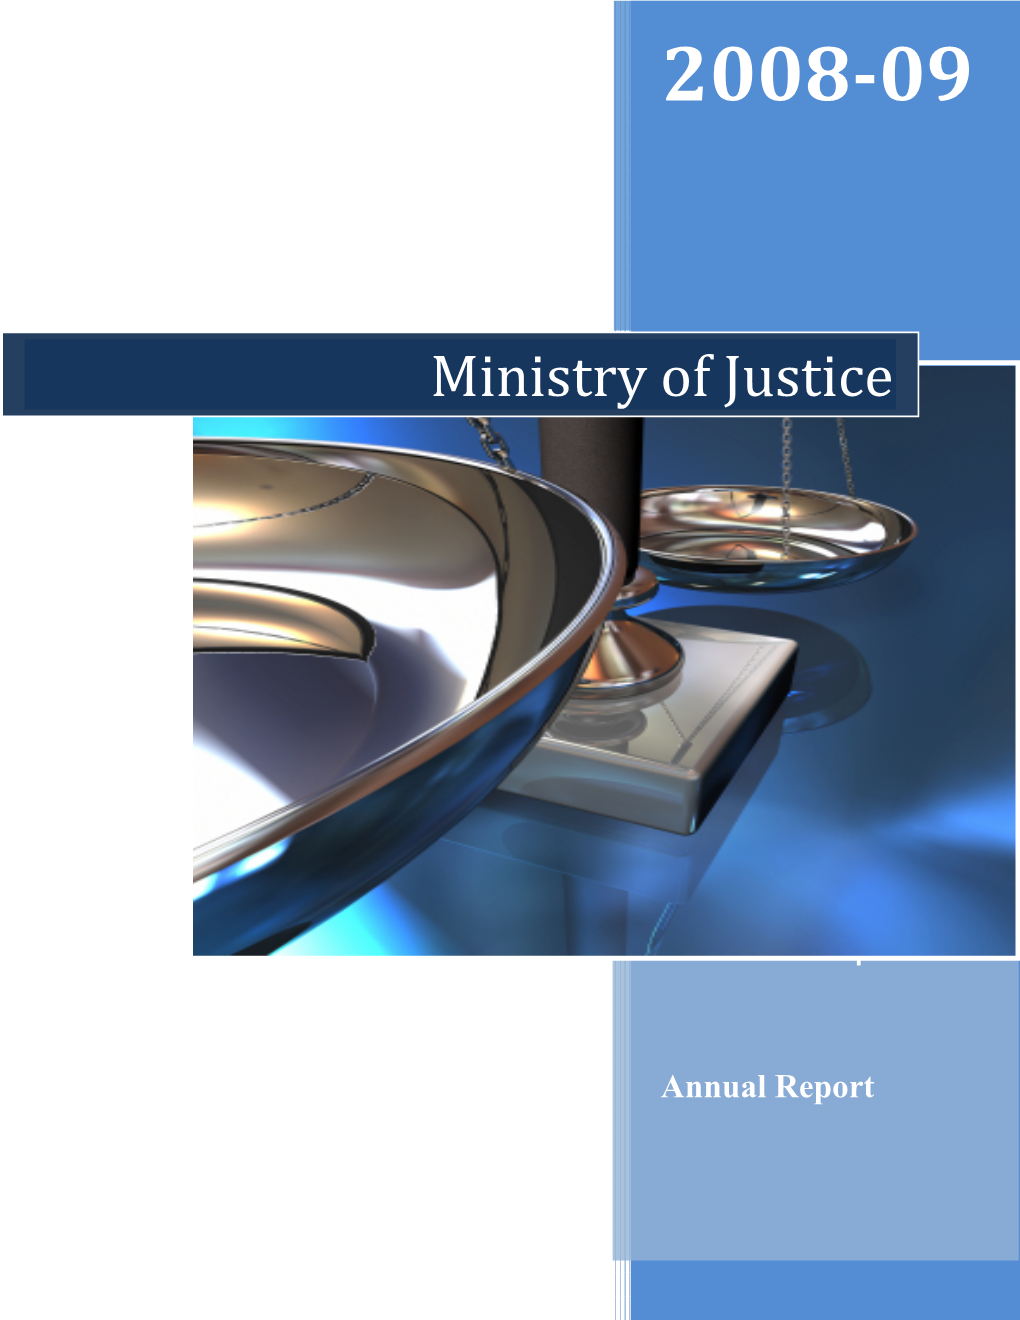 Final MOJ Annual Report 2008/09